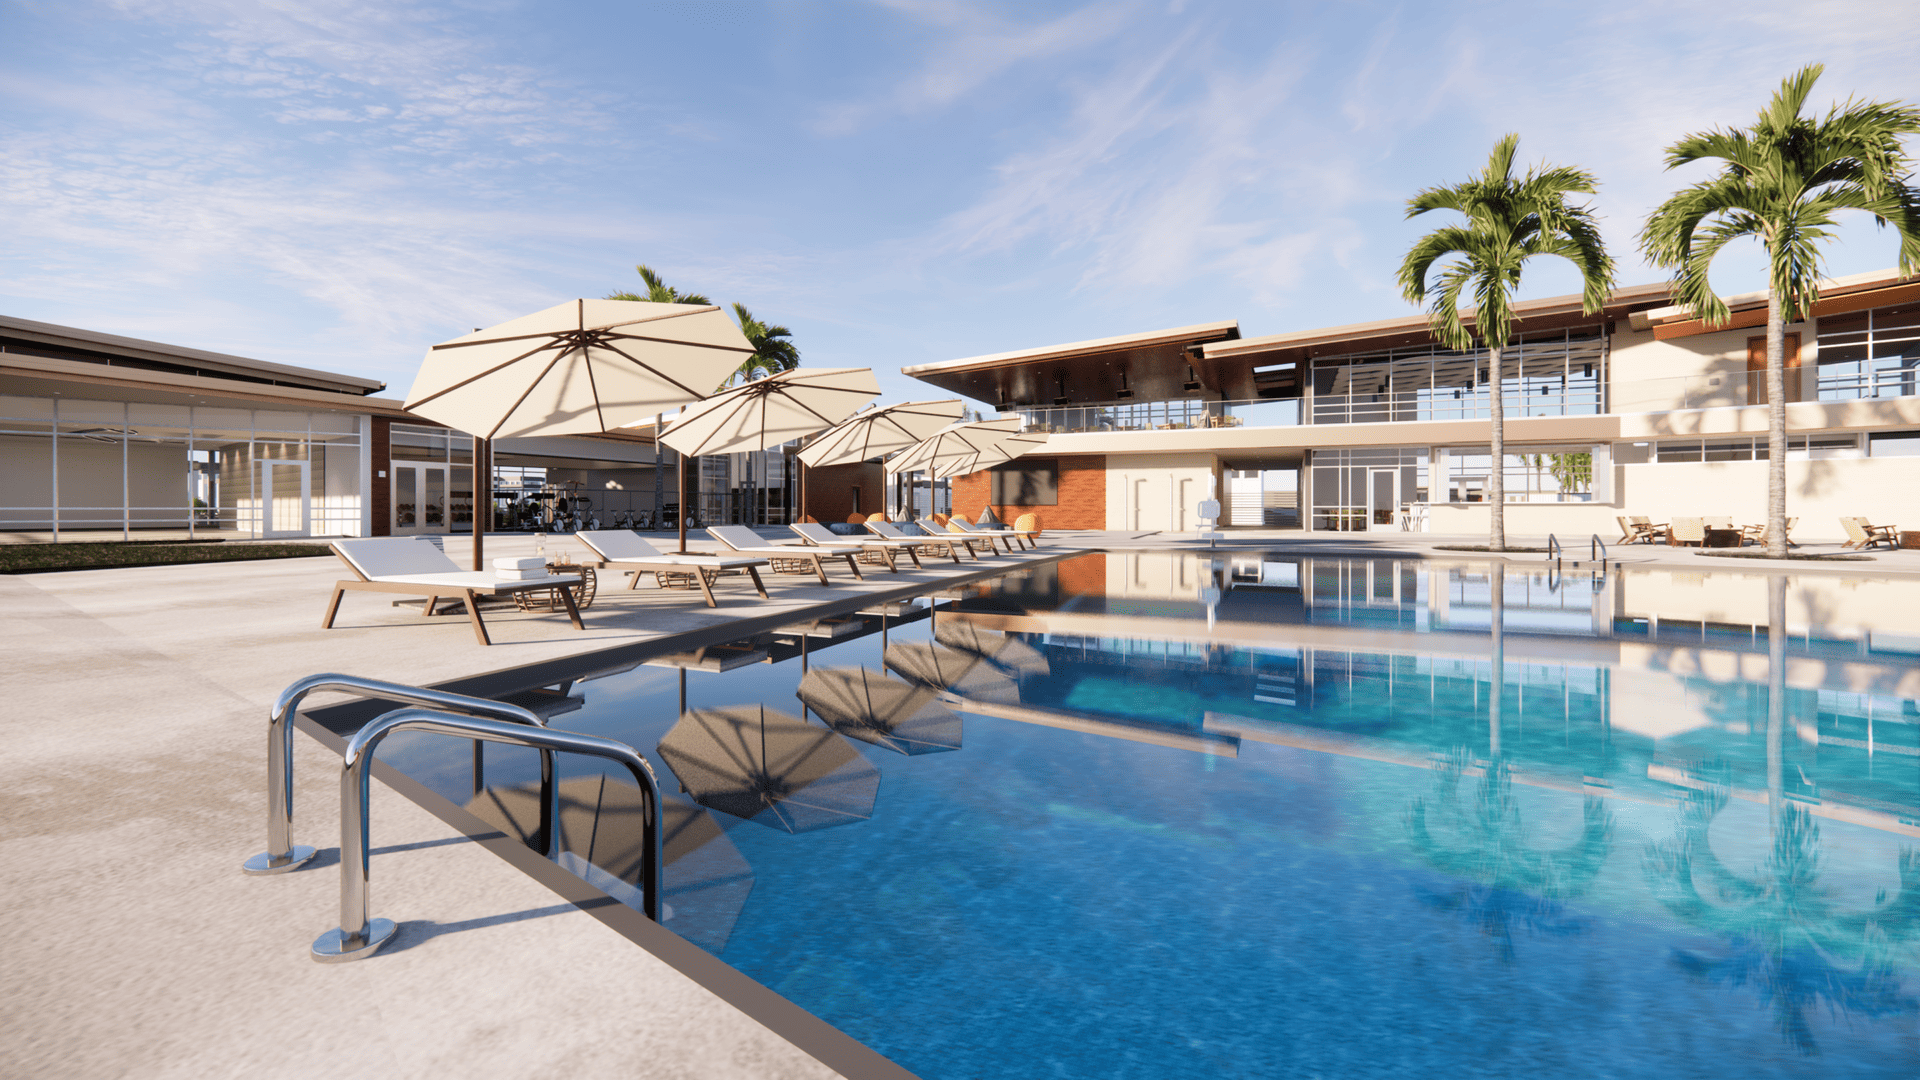 Costa Vista RV Resort pool 1